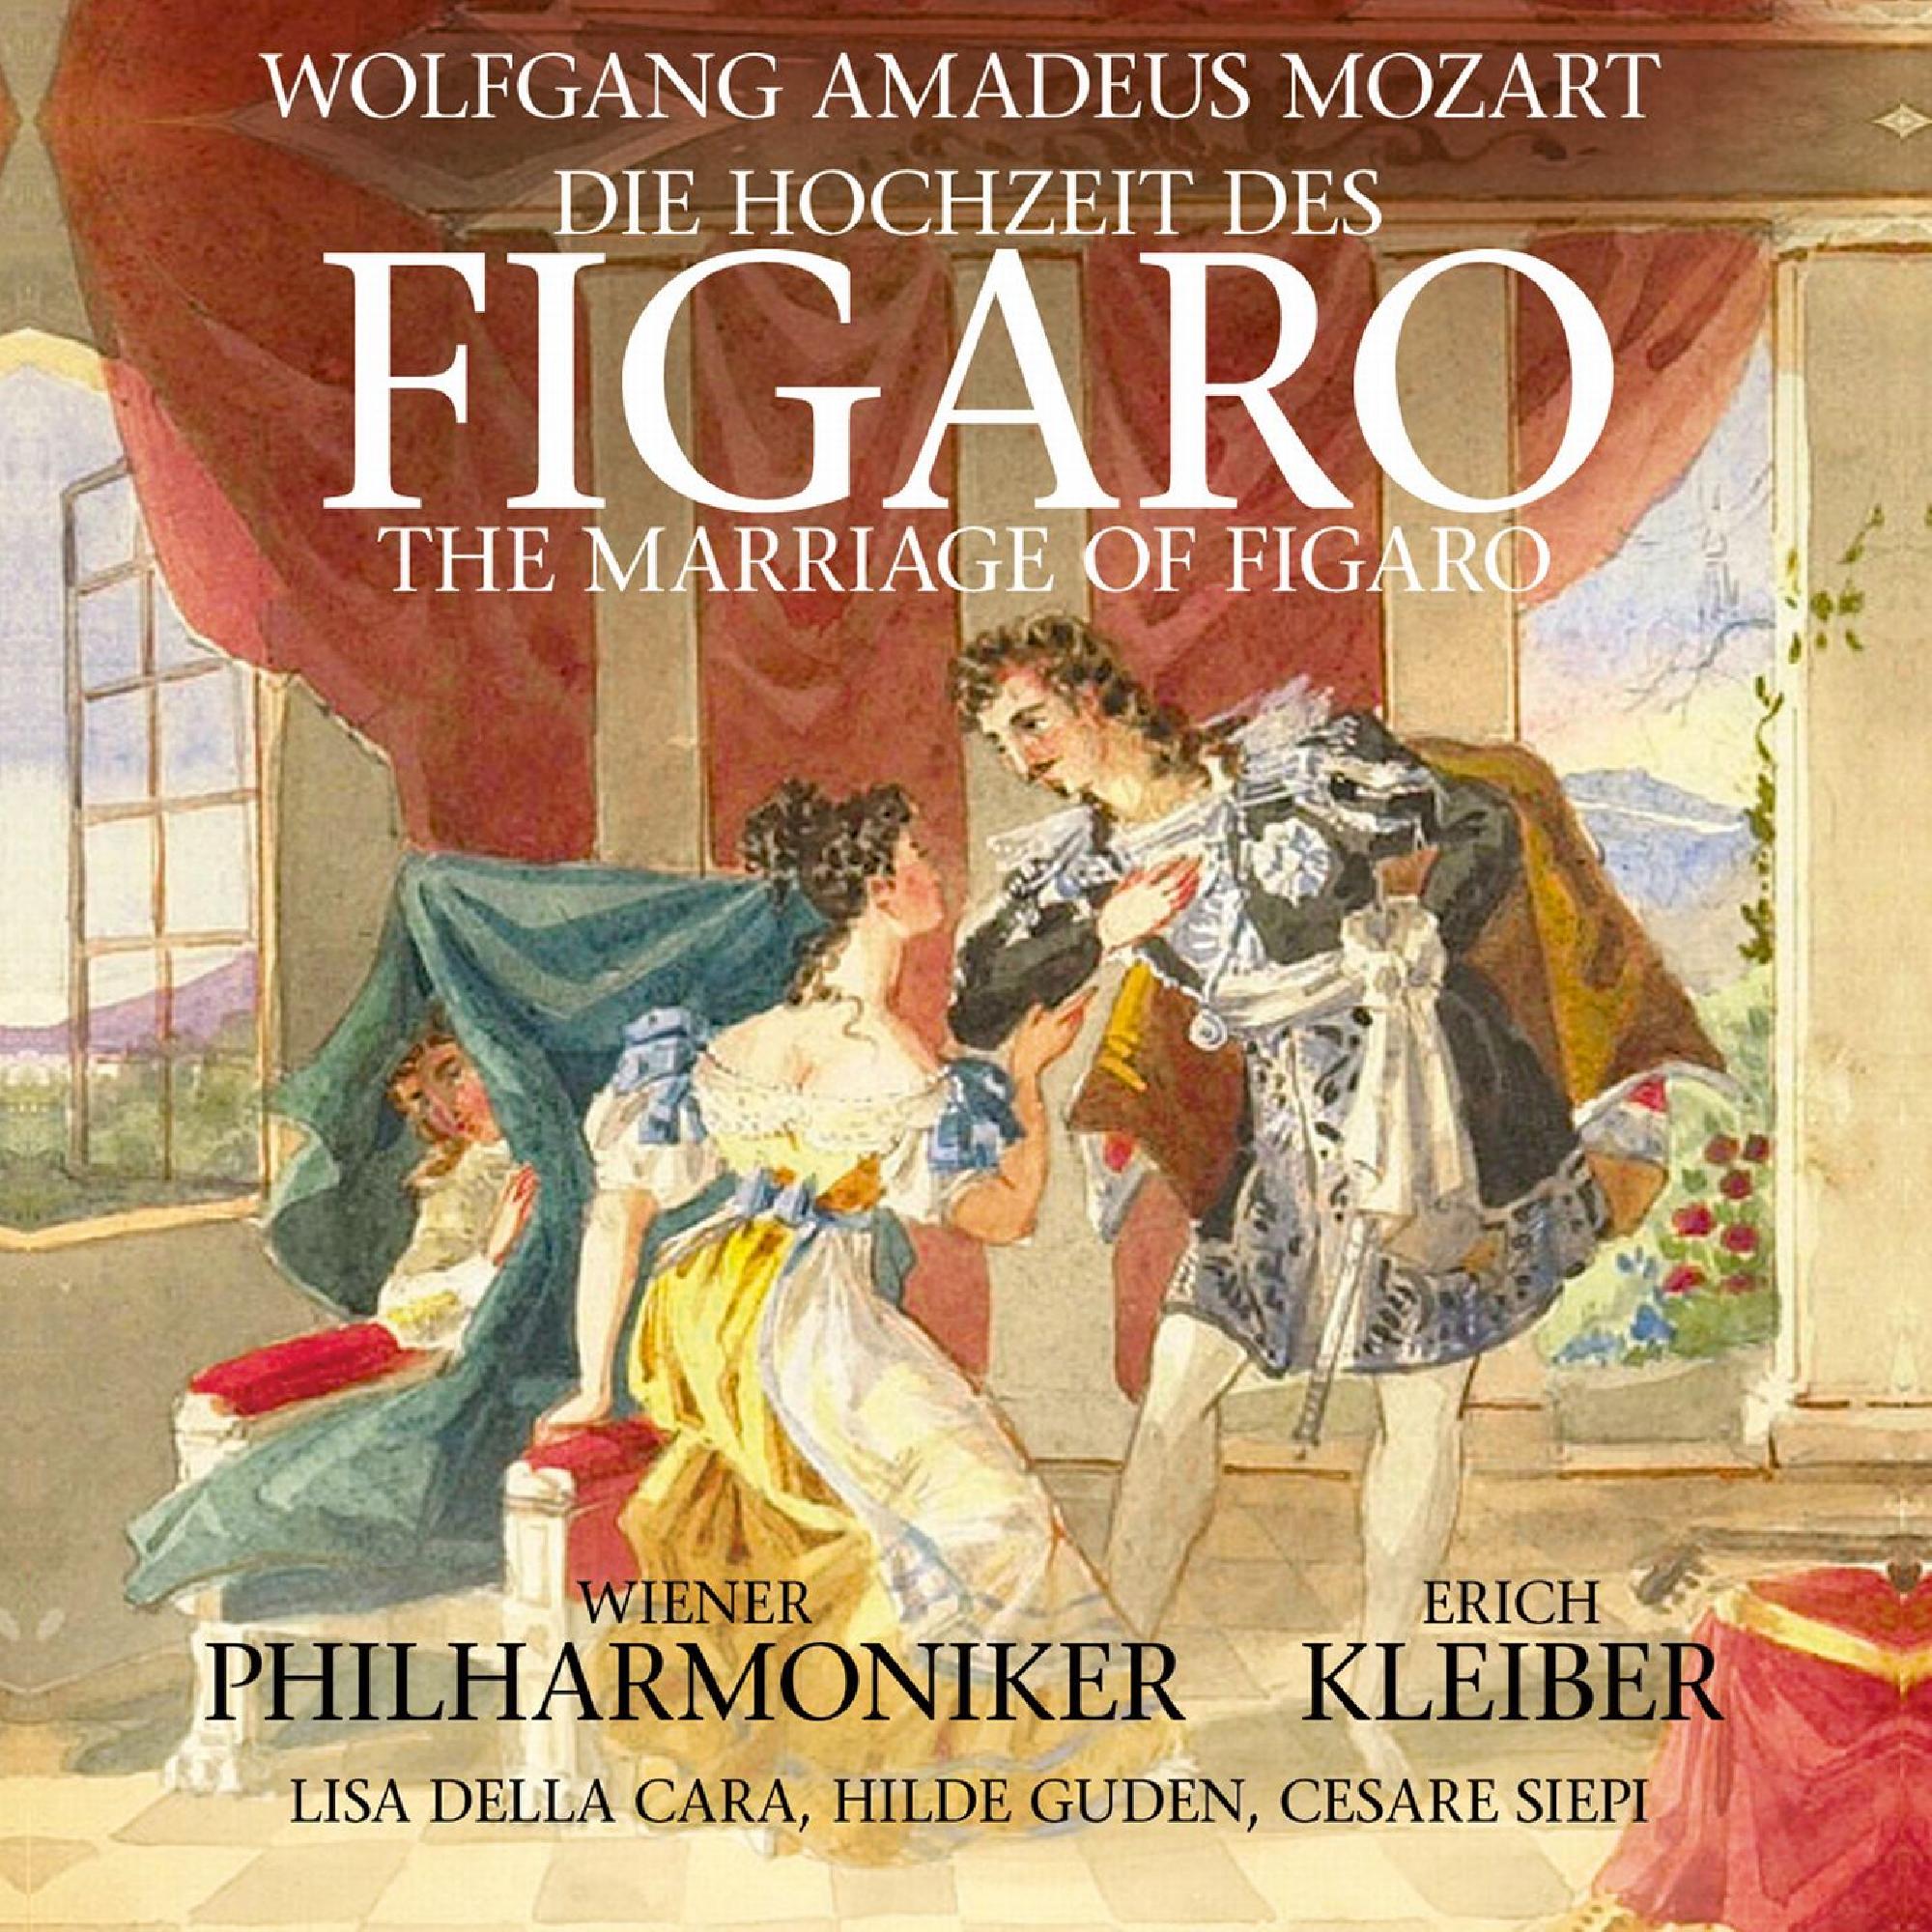 Сюжет оперы моцарта. Опера свадьба Фигаро Моцарт. «Свадьба Фигаро», «Дон-Жуан» Моцарт. Иллюстрация к свадьбе Фигаро Моцарта.